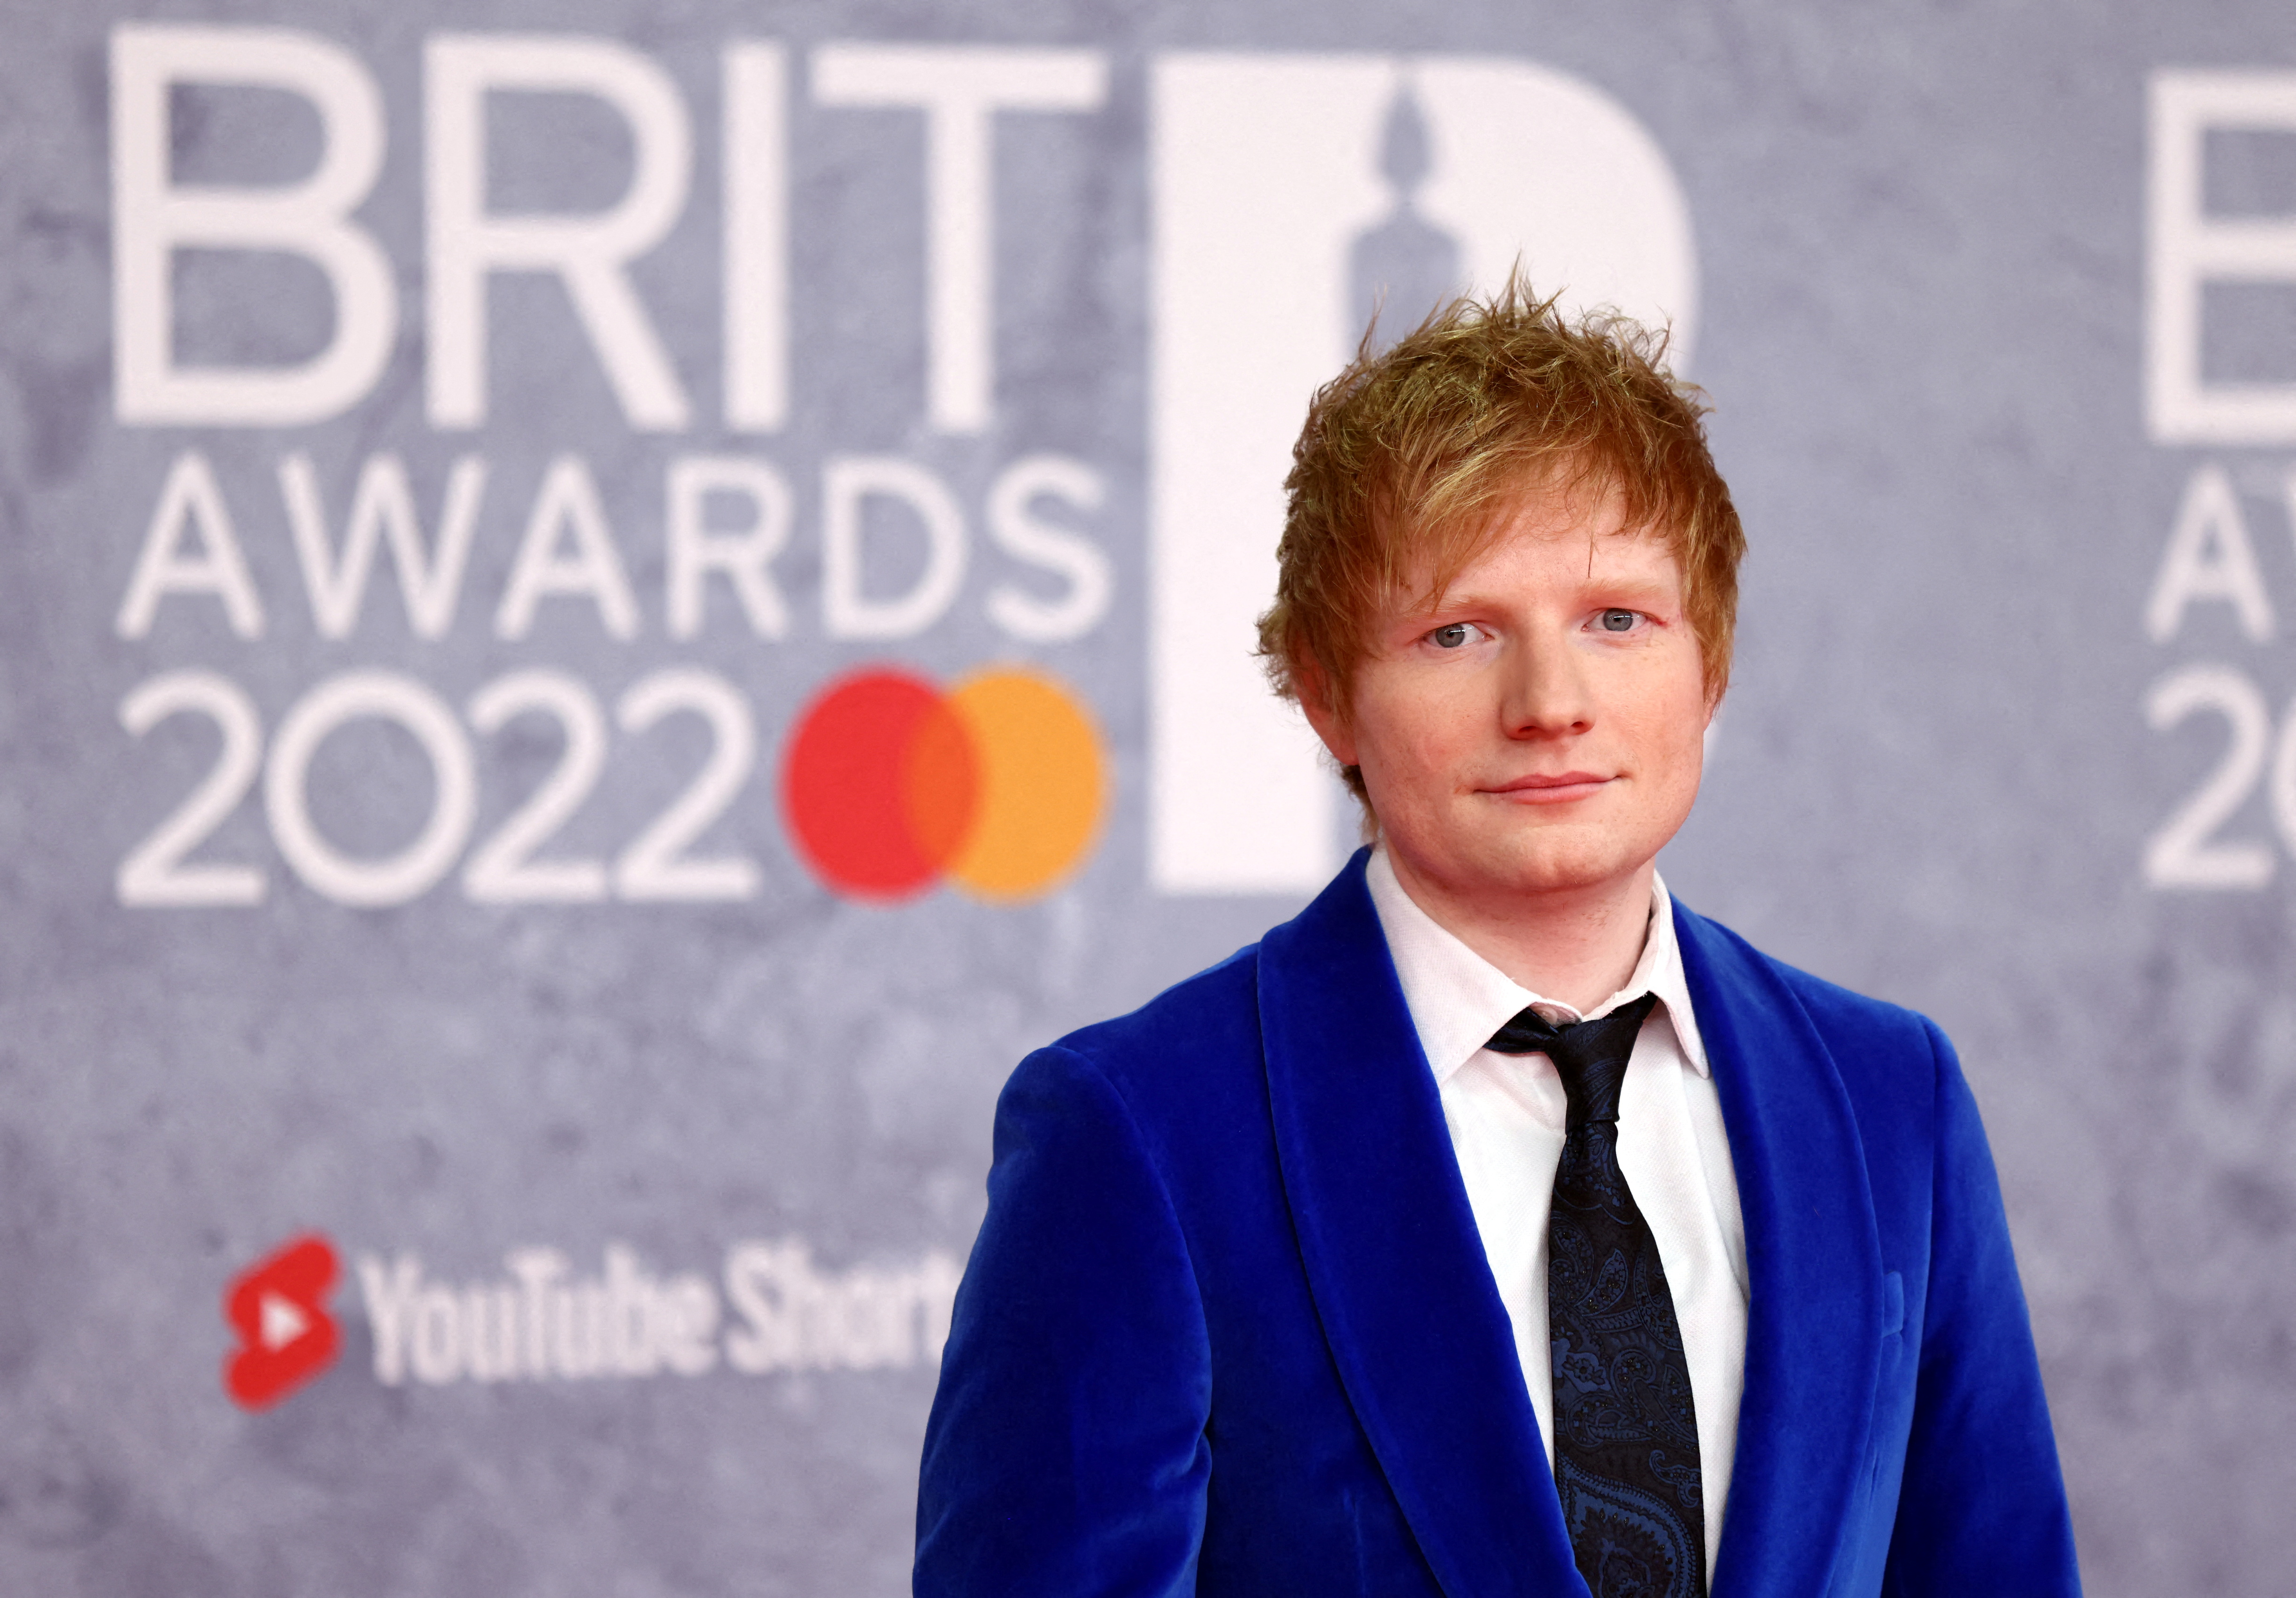 La giustizia ha stabilito che Ed Sheeran non ha plagiato «Shape of you»: il paragone con la canzone dell'autore che lo accusava